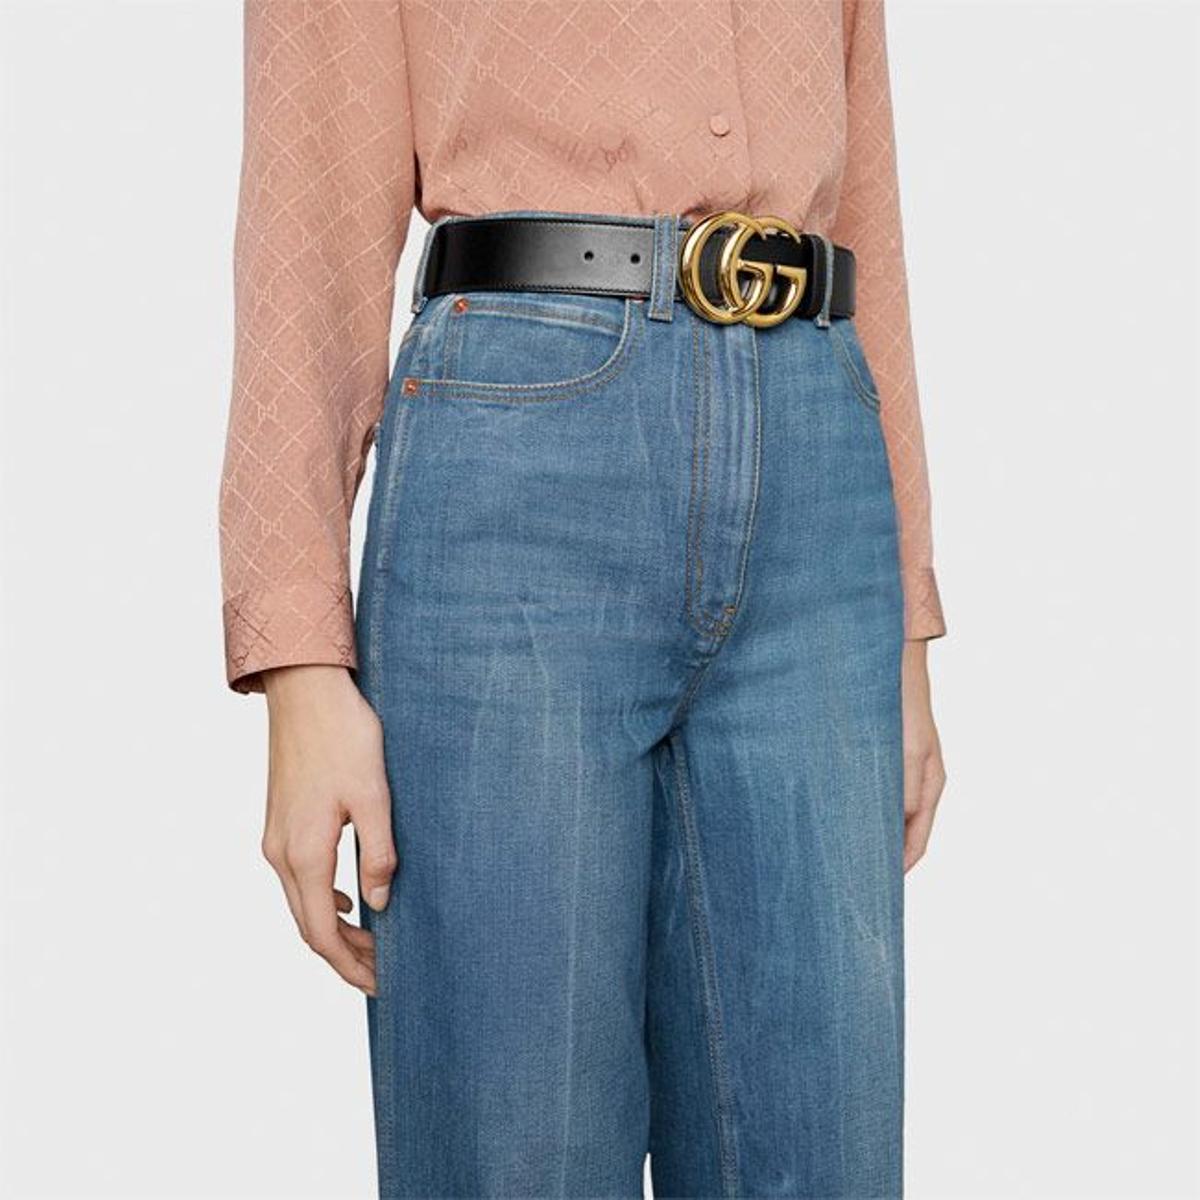 Cinturón de Doble G, de Gucci